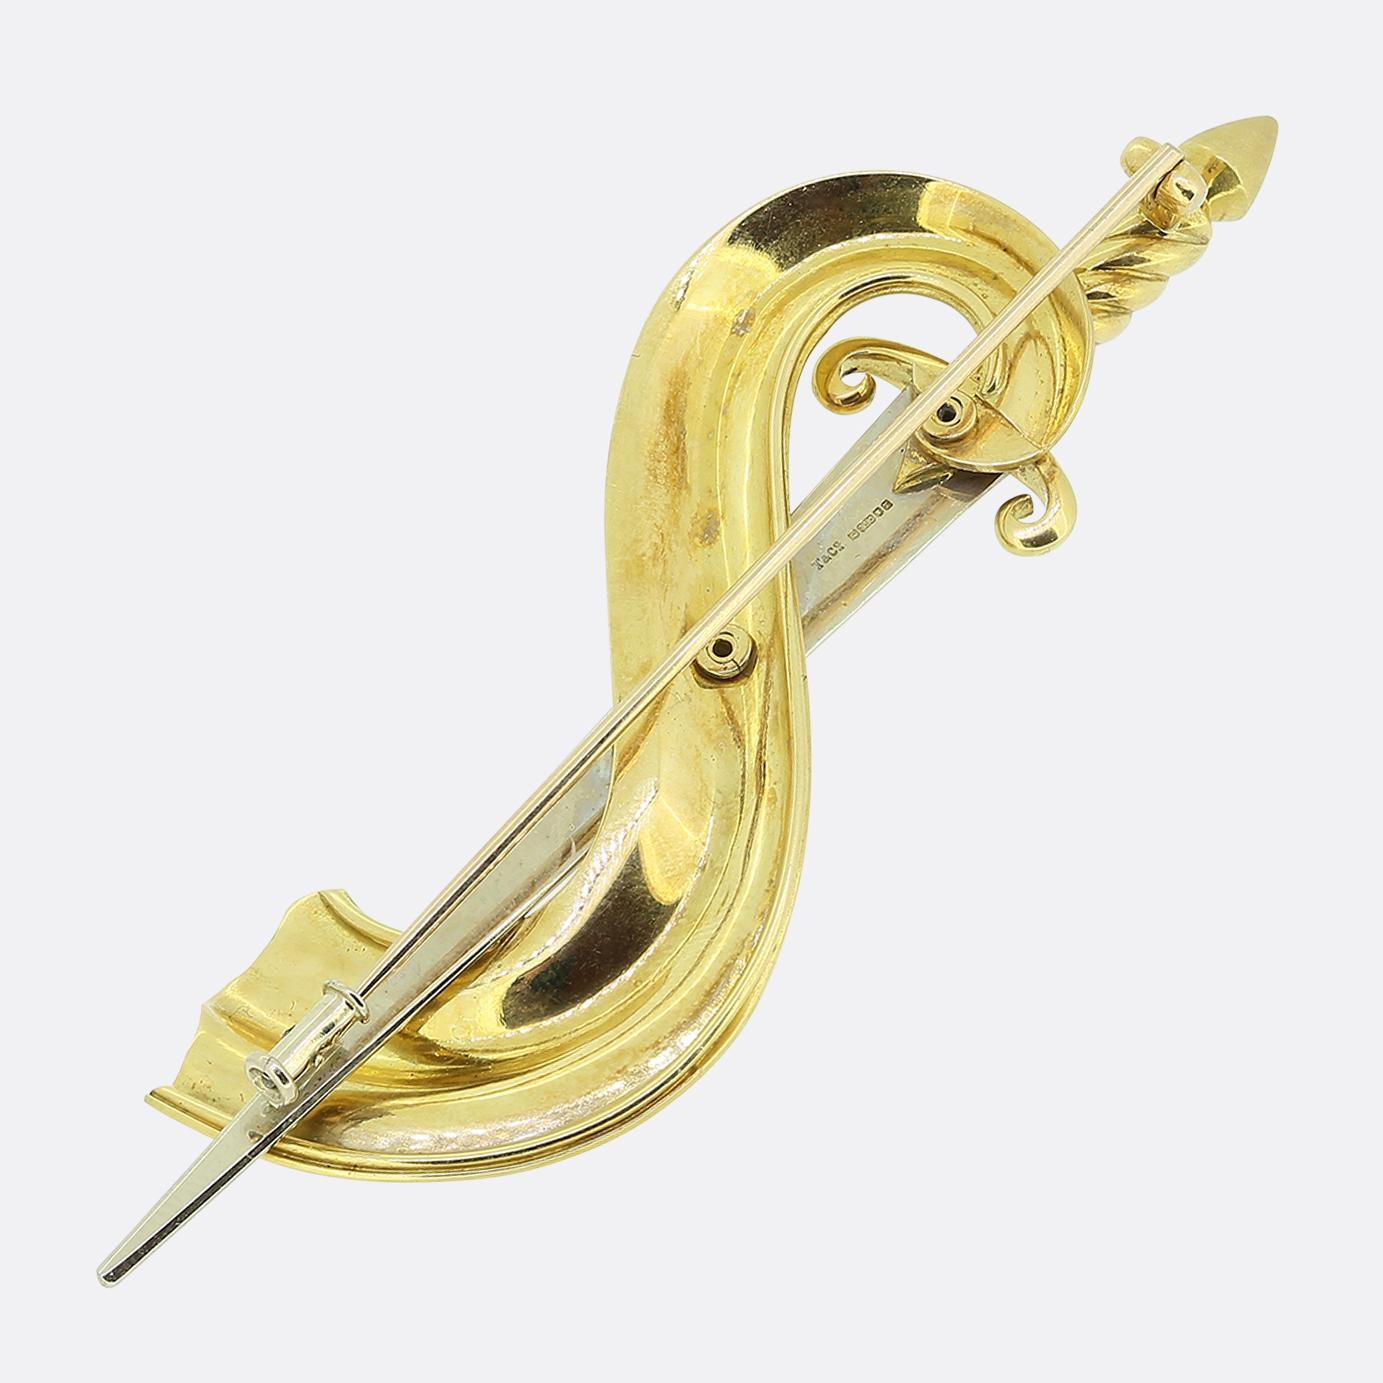 Hier haben wir eine schöne Vintage-Brosche des Luxusschmuckdesigners Tiffany & Co. Dieses Stück wurde aus 18-karätigem Gold in der Form eines Schwertes aus alten Zeiten gefertigt. Ein gerippter Griff aus Gelbgold führt zu einer Klinge aus Weißgold,